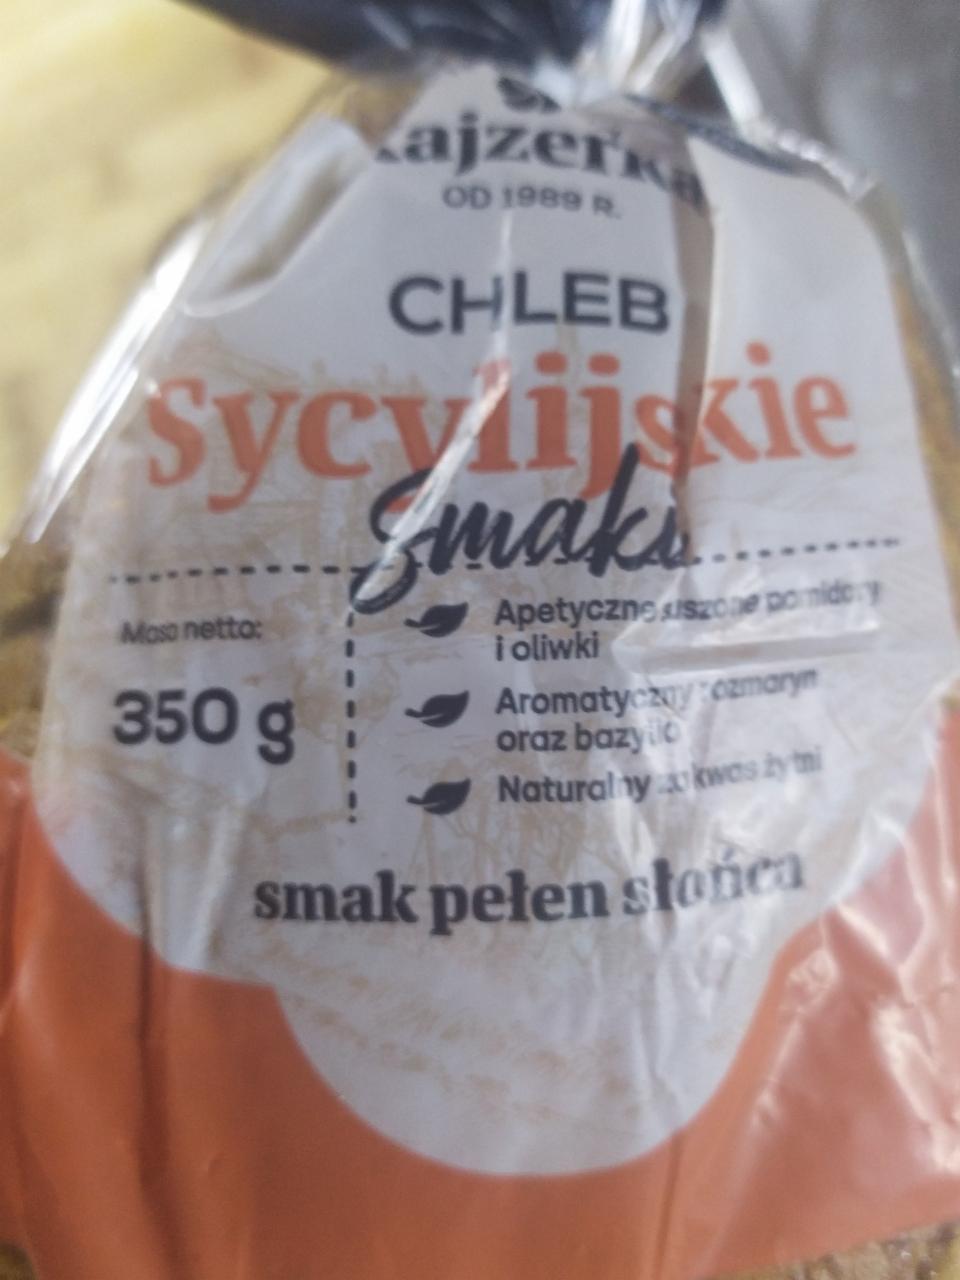 Zdjęcia - Chleb sycylijskie smaki Kajzerka